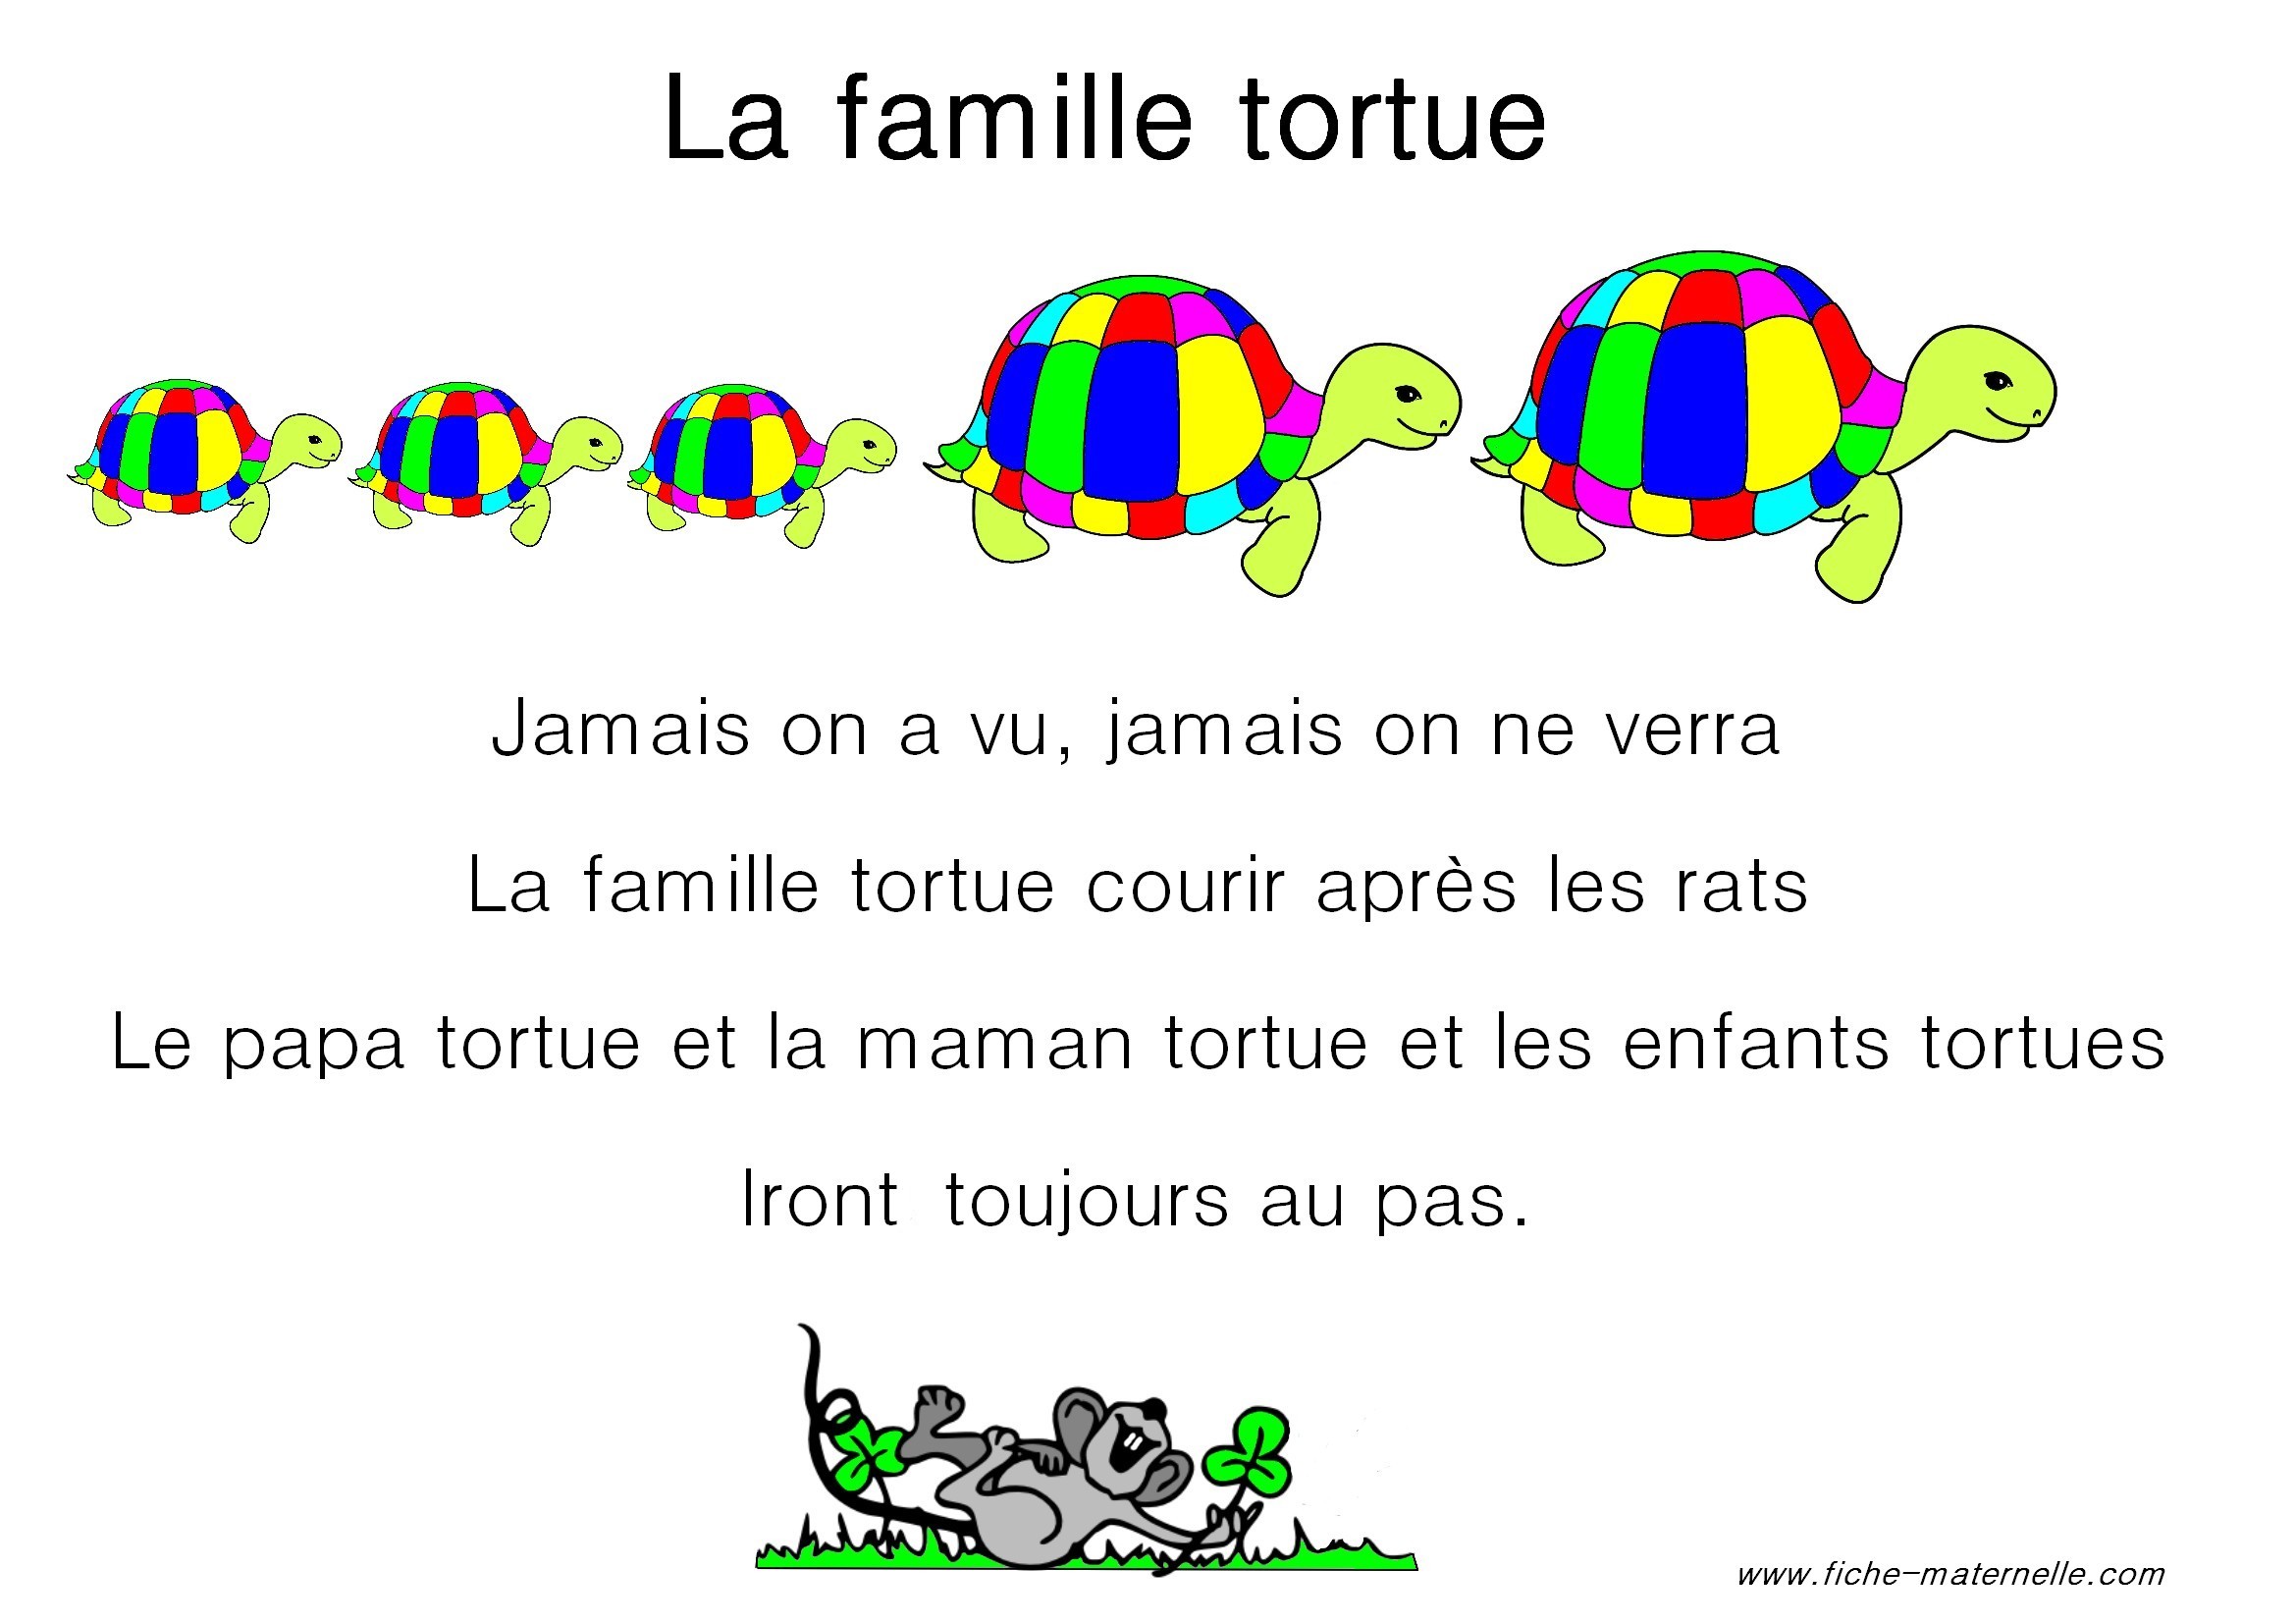 Résultat de recherche d'images pour "comptine la famille tortue"